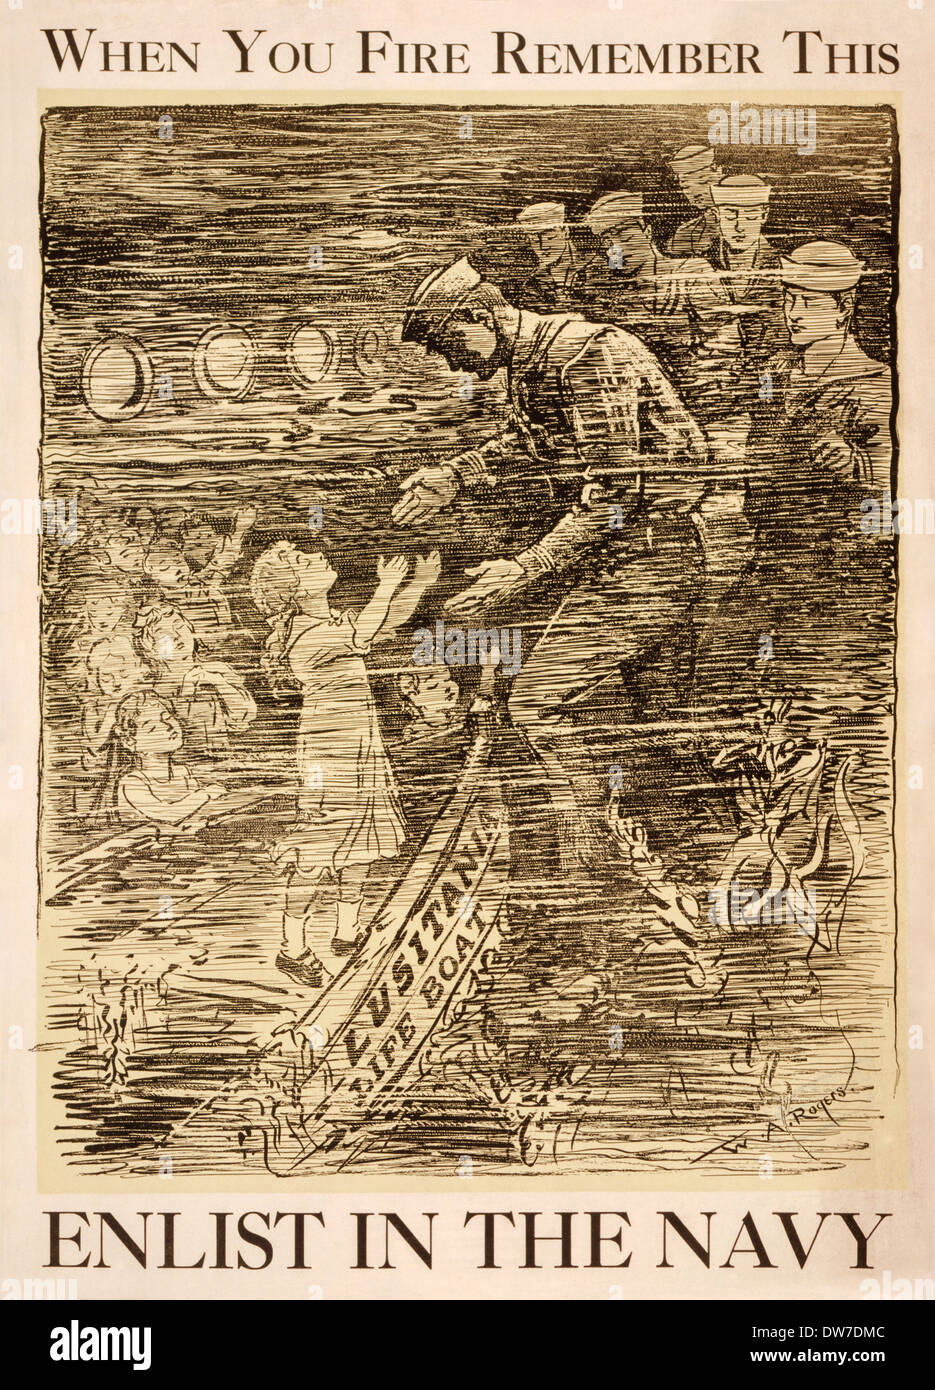 Affiche de recrutement de la Marine américaine publié en 1917 rappelant aux lecteurs de U-boat allemand's naufrage du navire civil RMS Lusitania. Banque D'Images